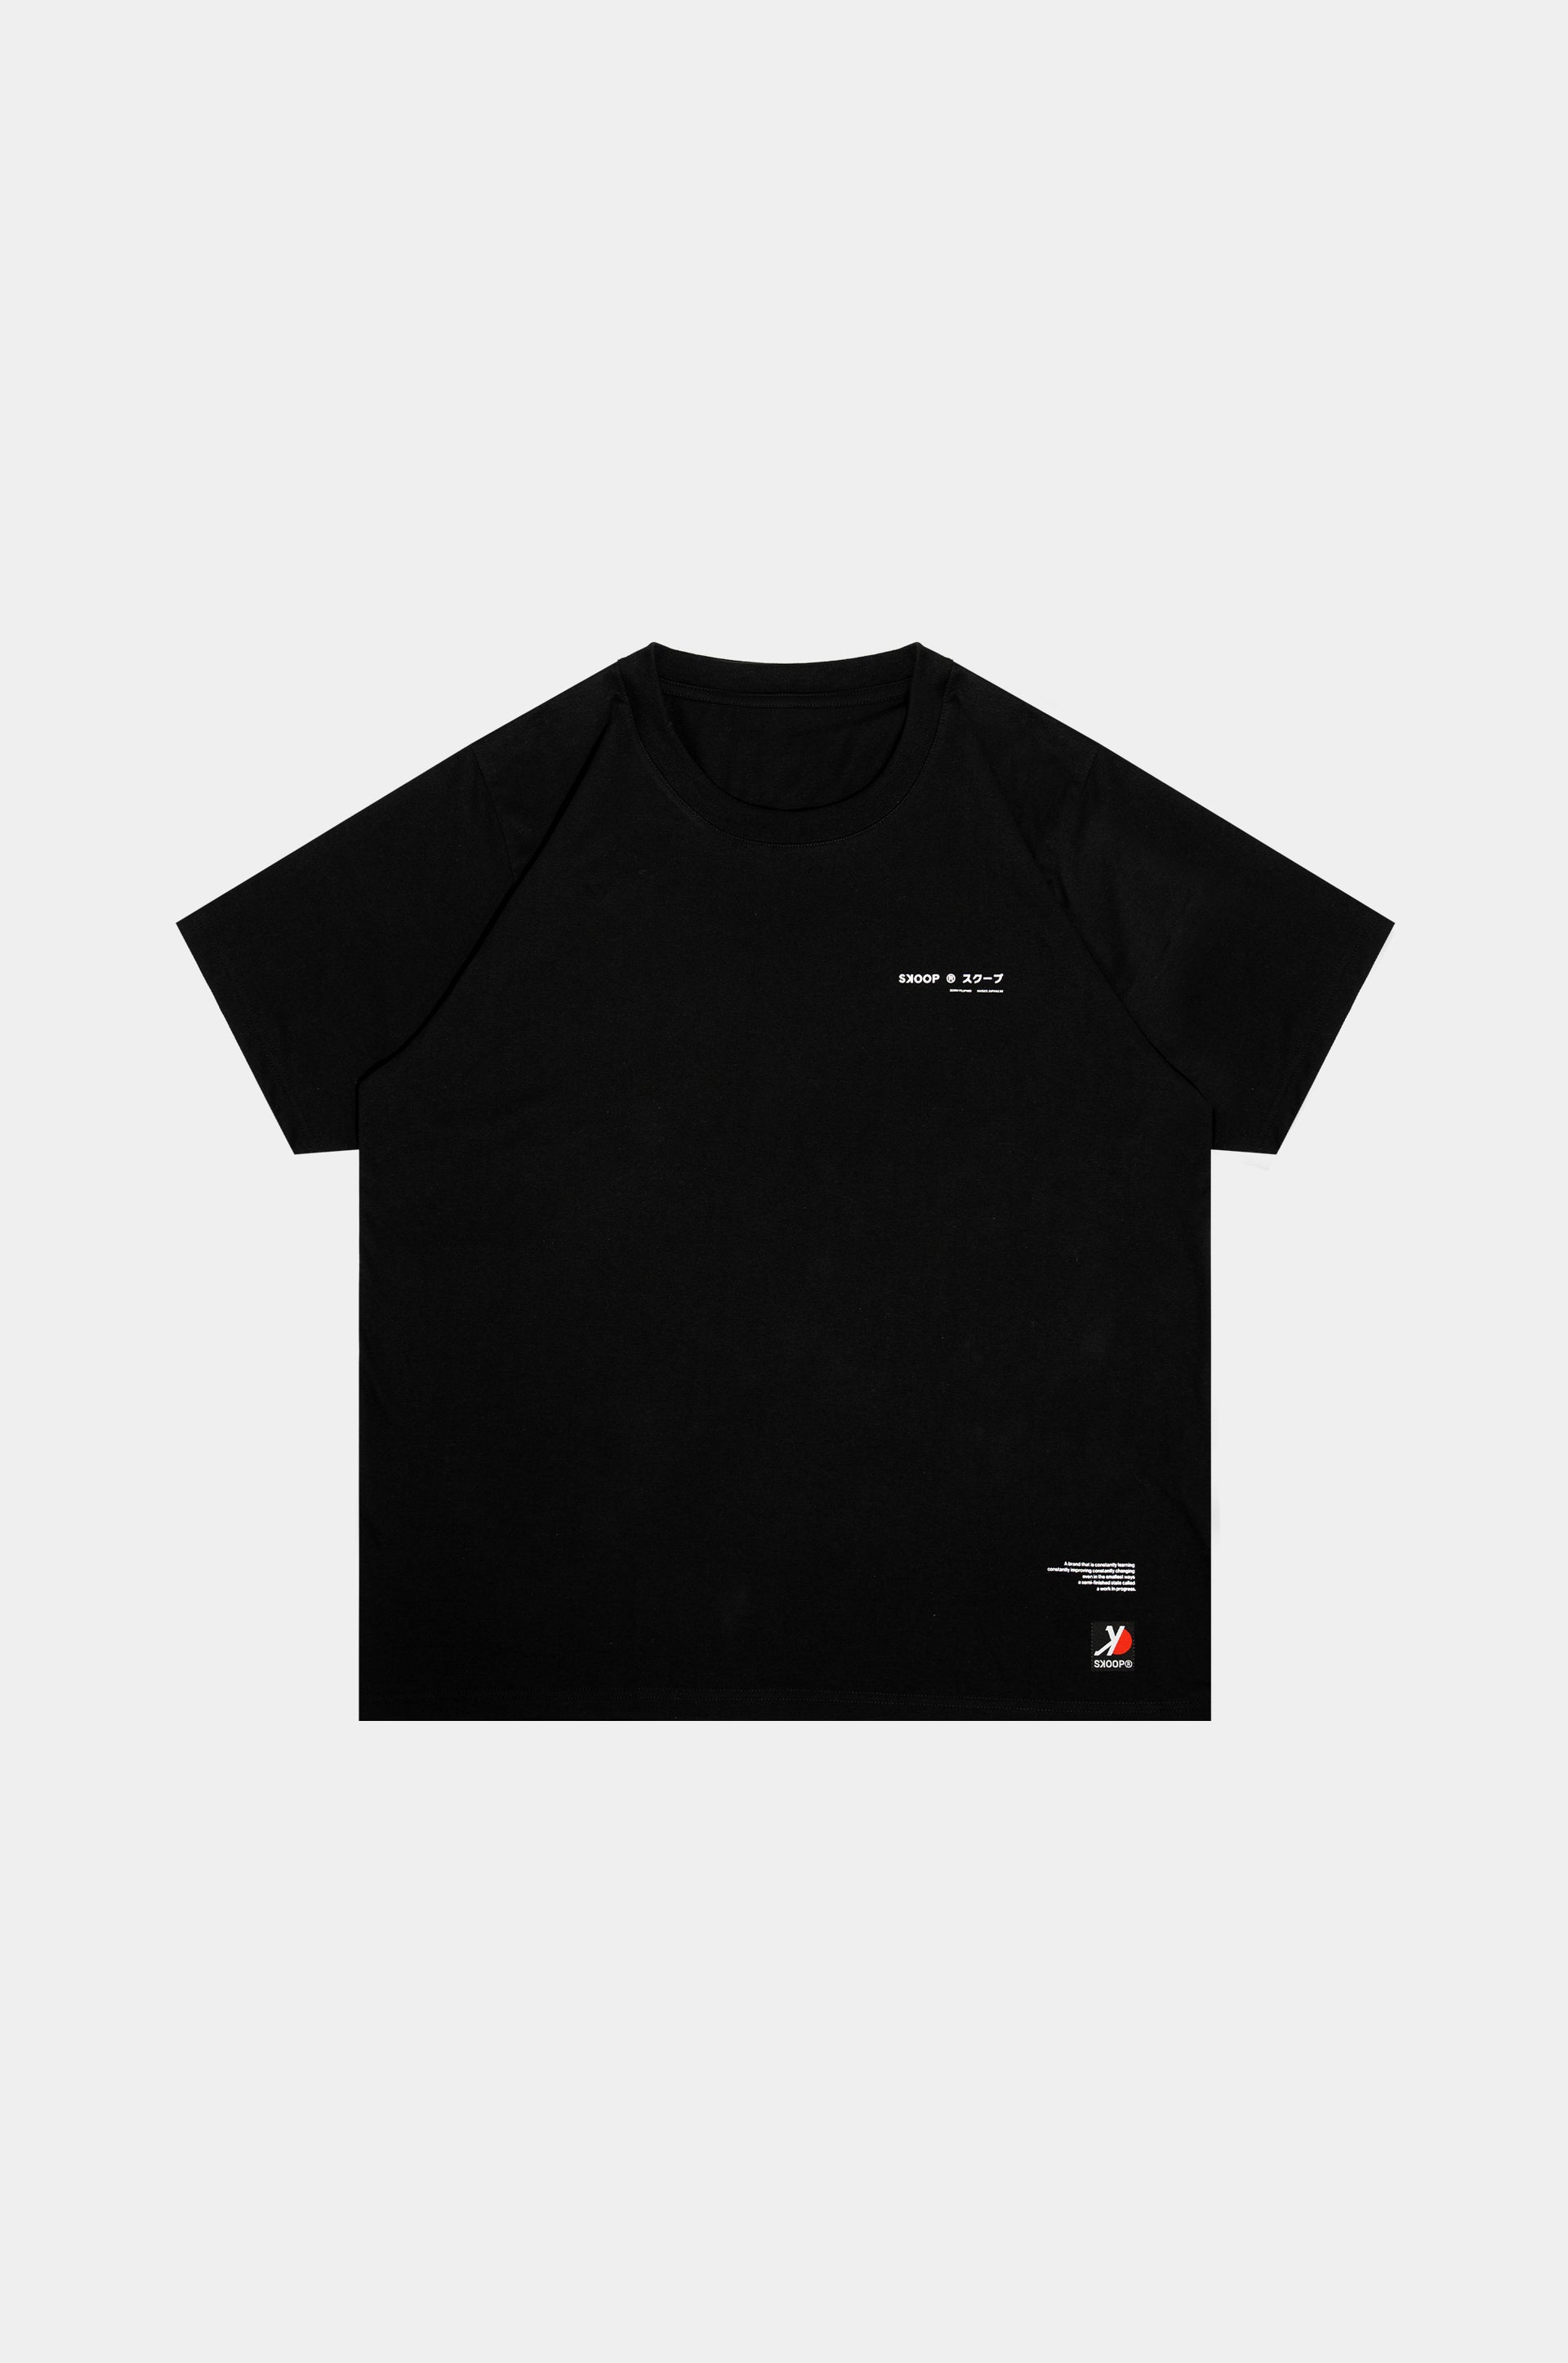 SKOOP® Twin Dragon Shirt Onyx